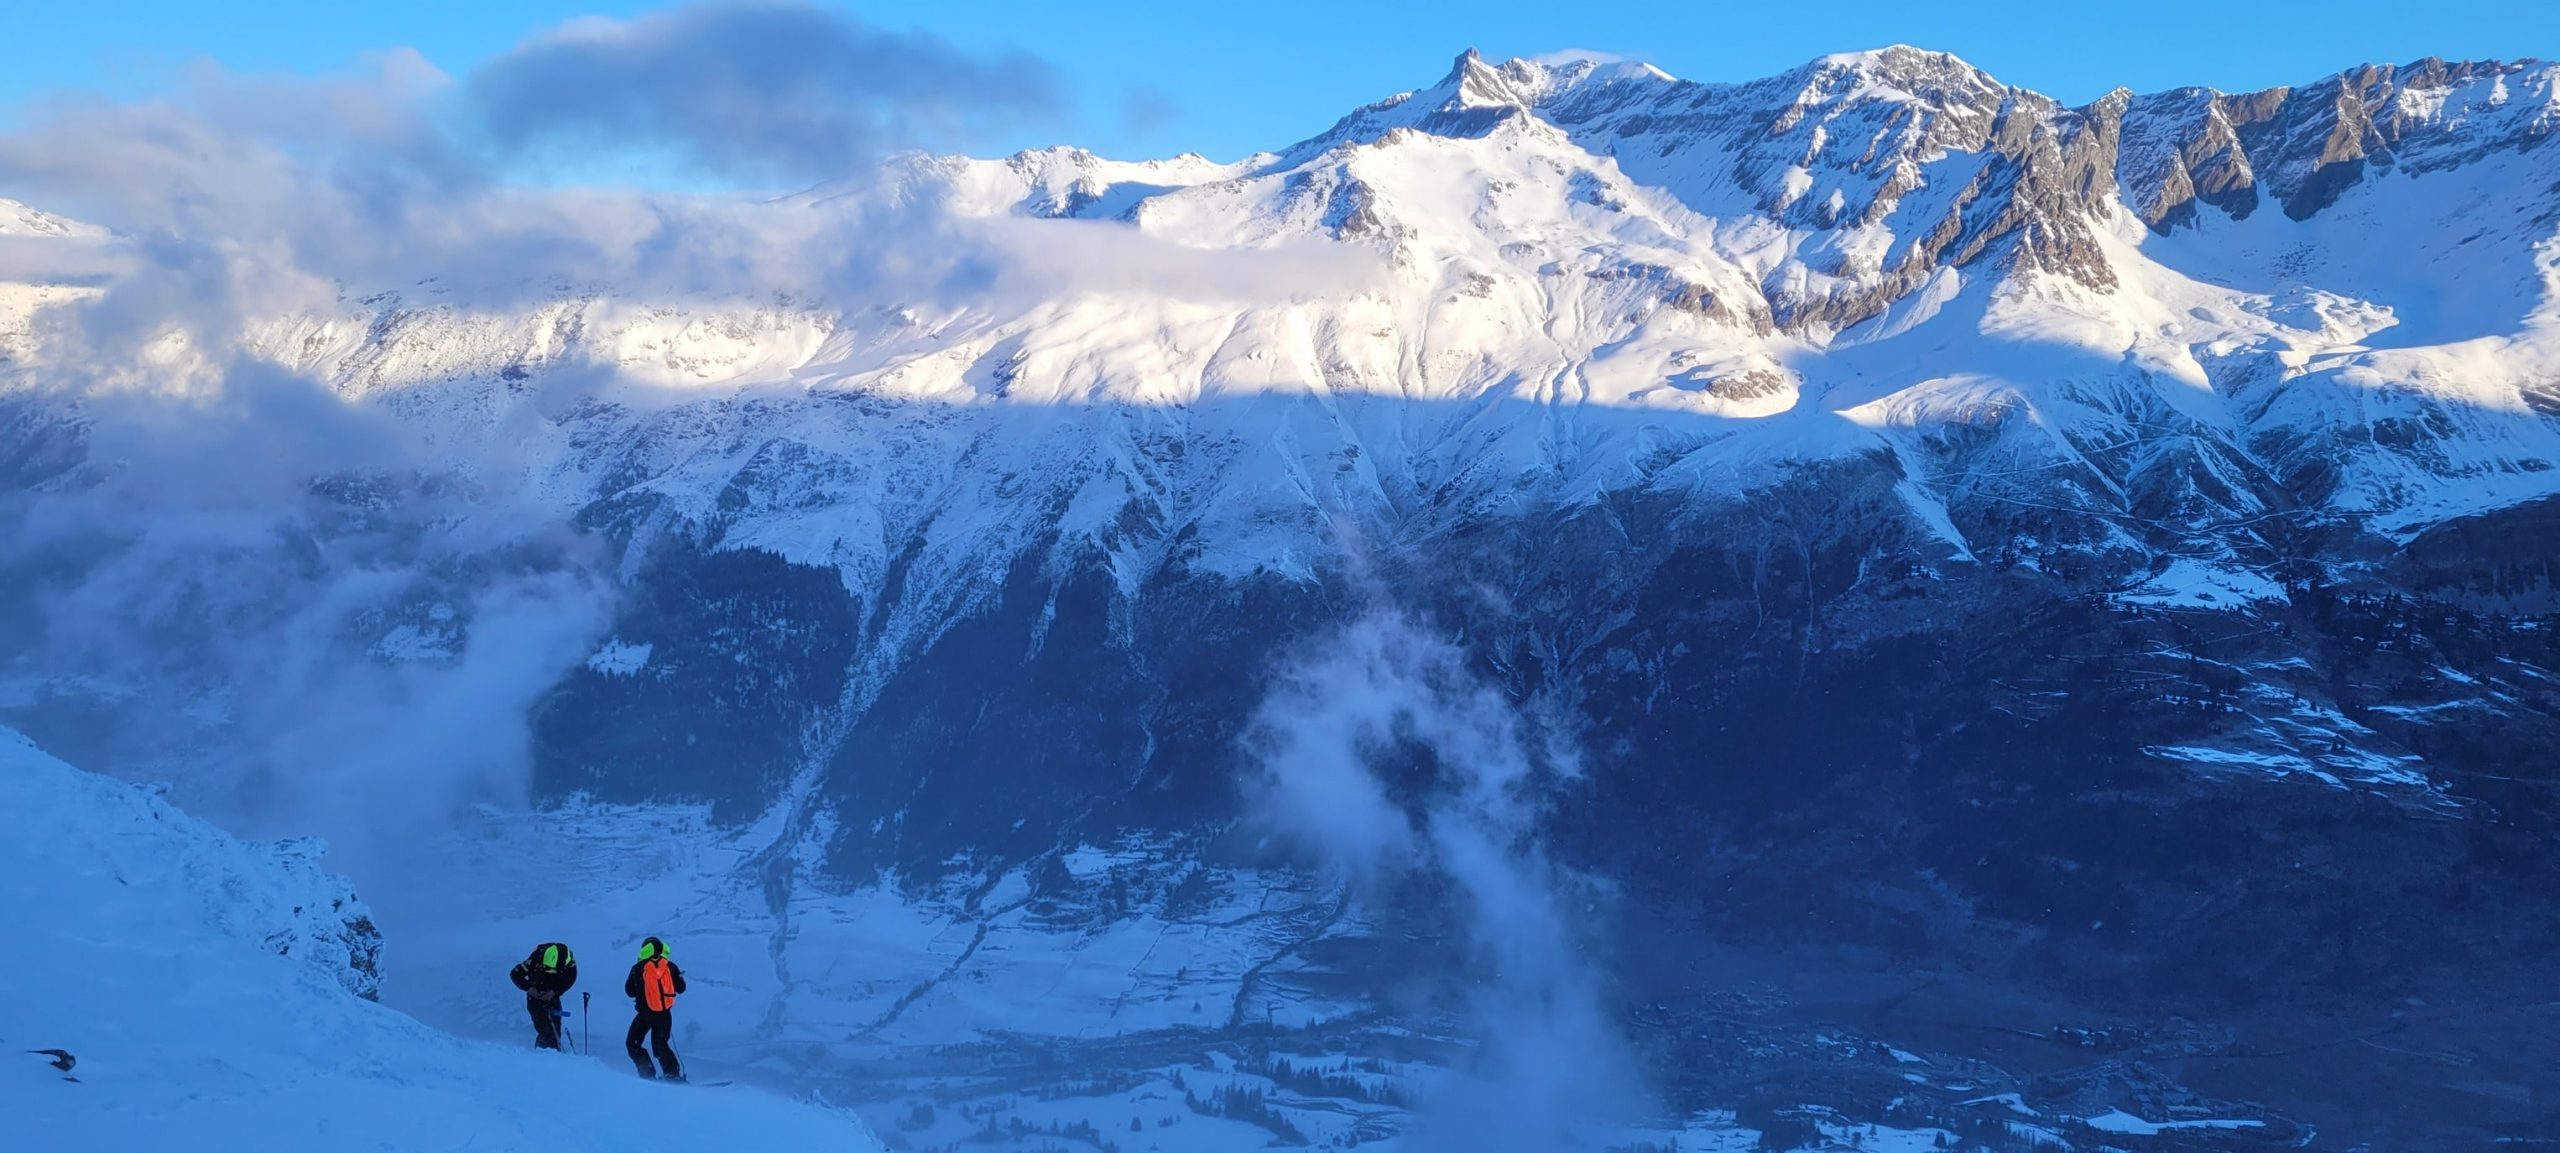 Val Cenis ski resort in the French Alps